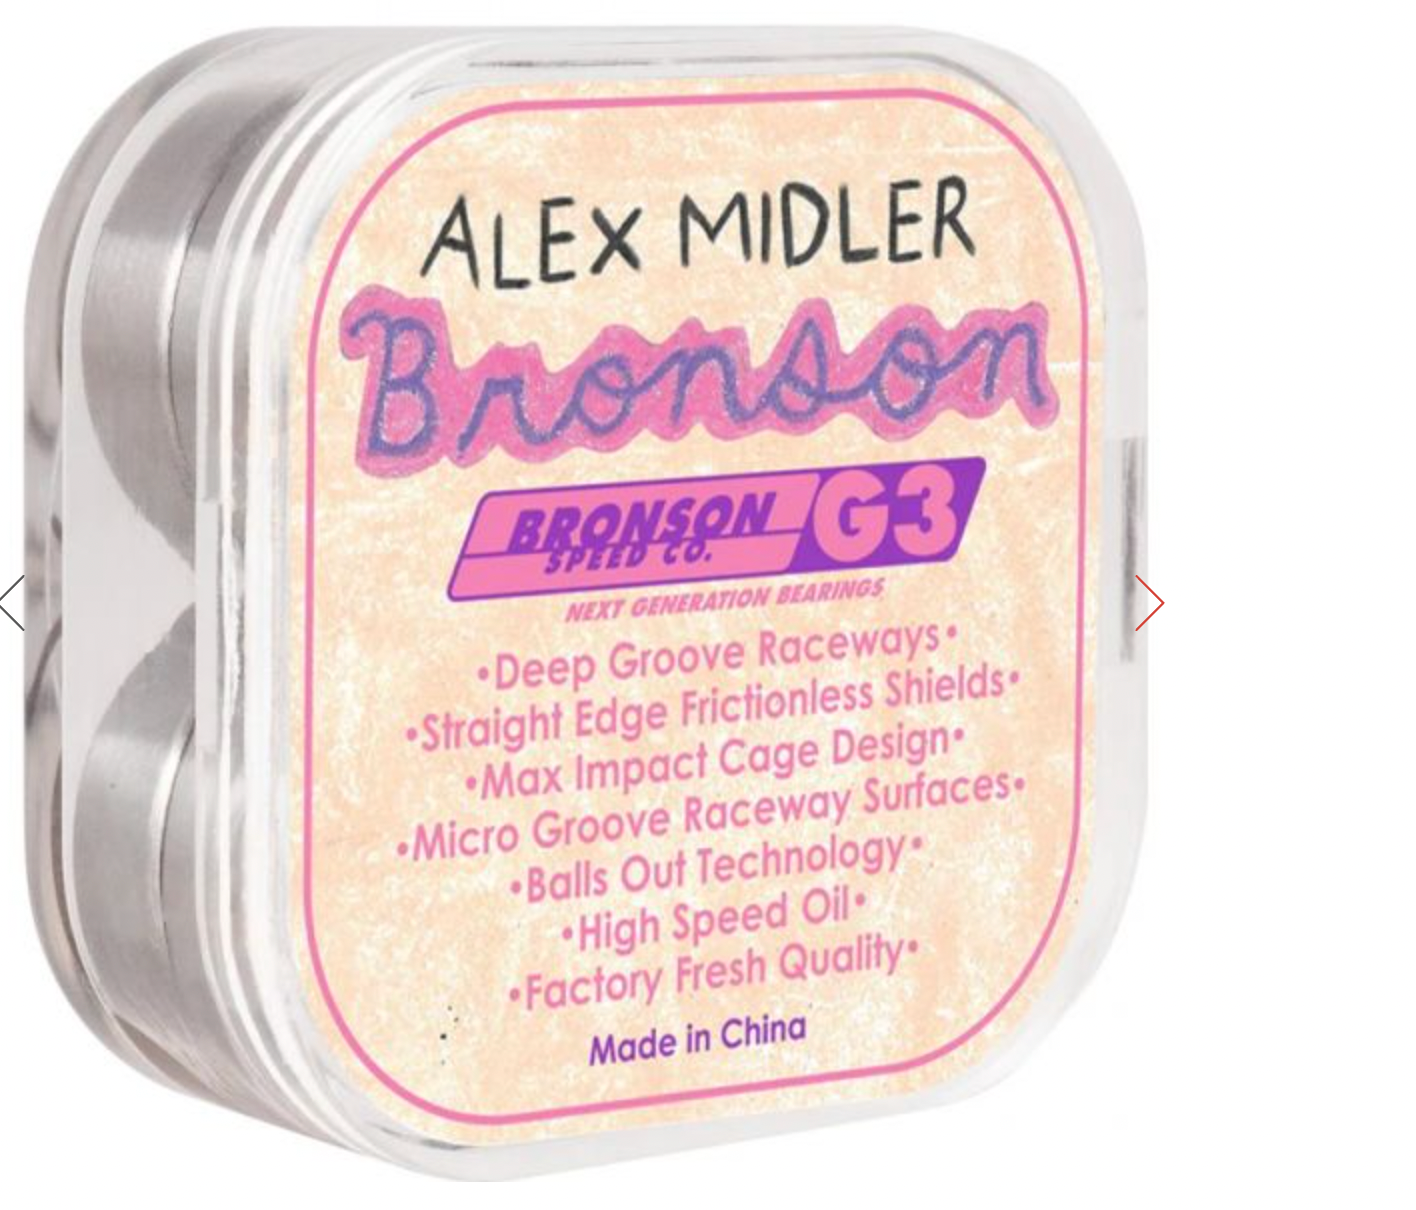 Bronson Speed Co. Alex Midler Pro G3 Skateboard Bearings (Pack of 8)